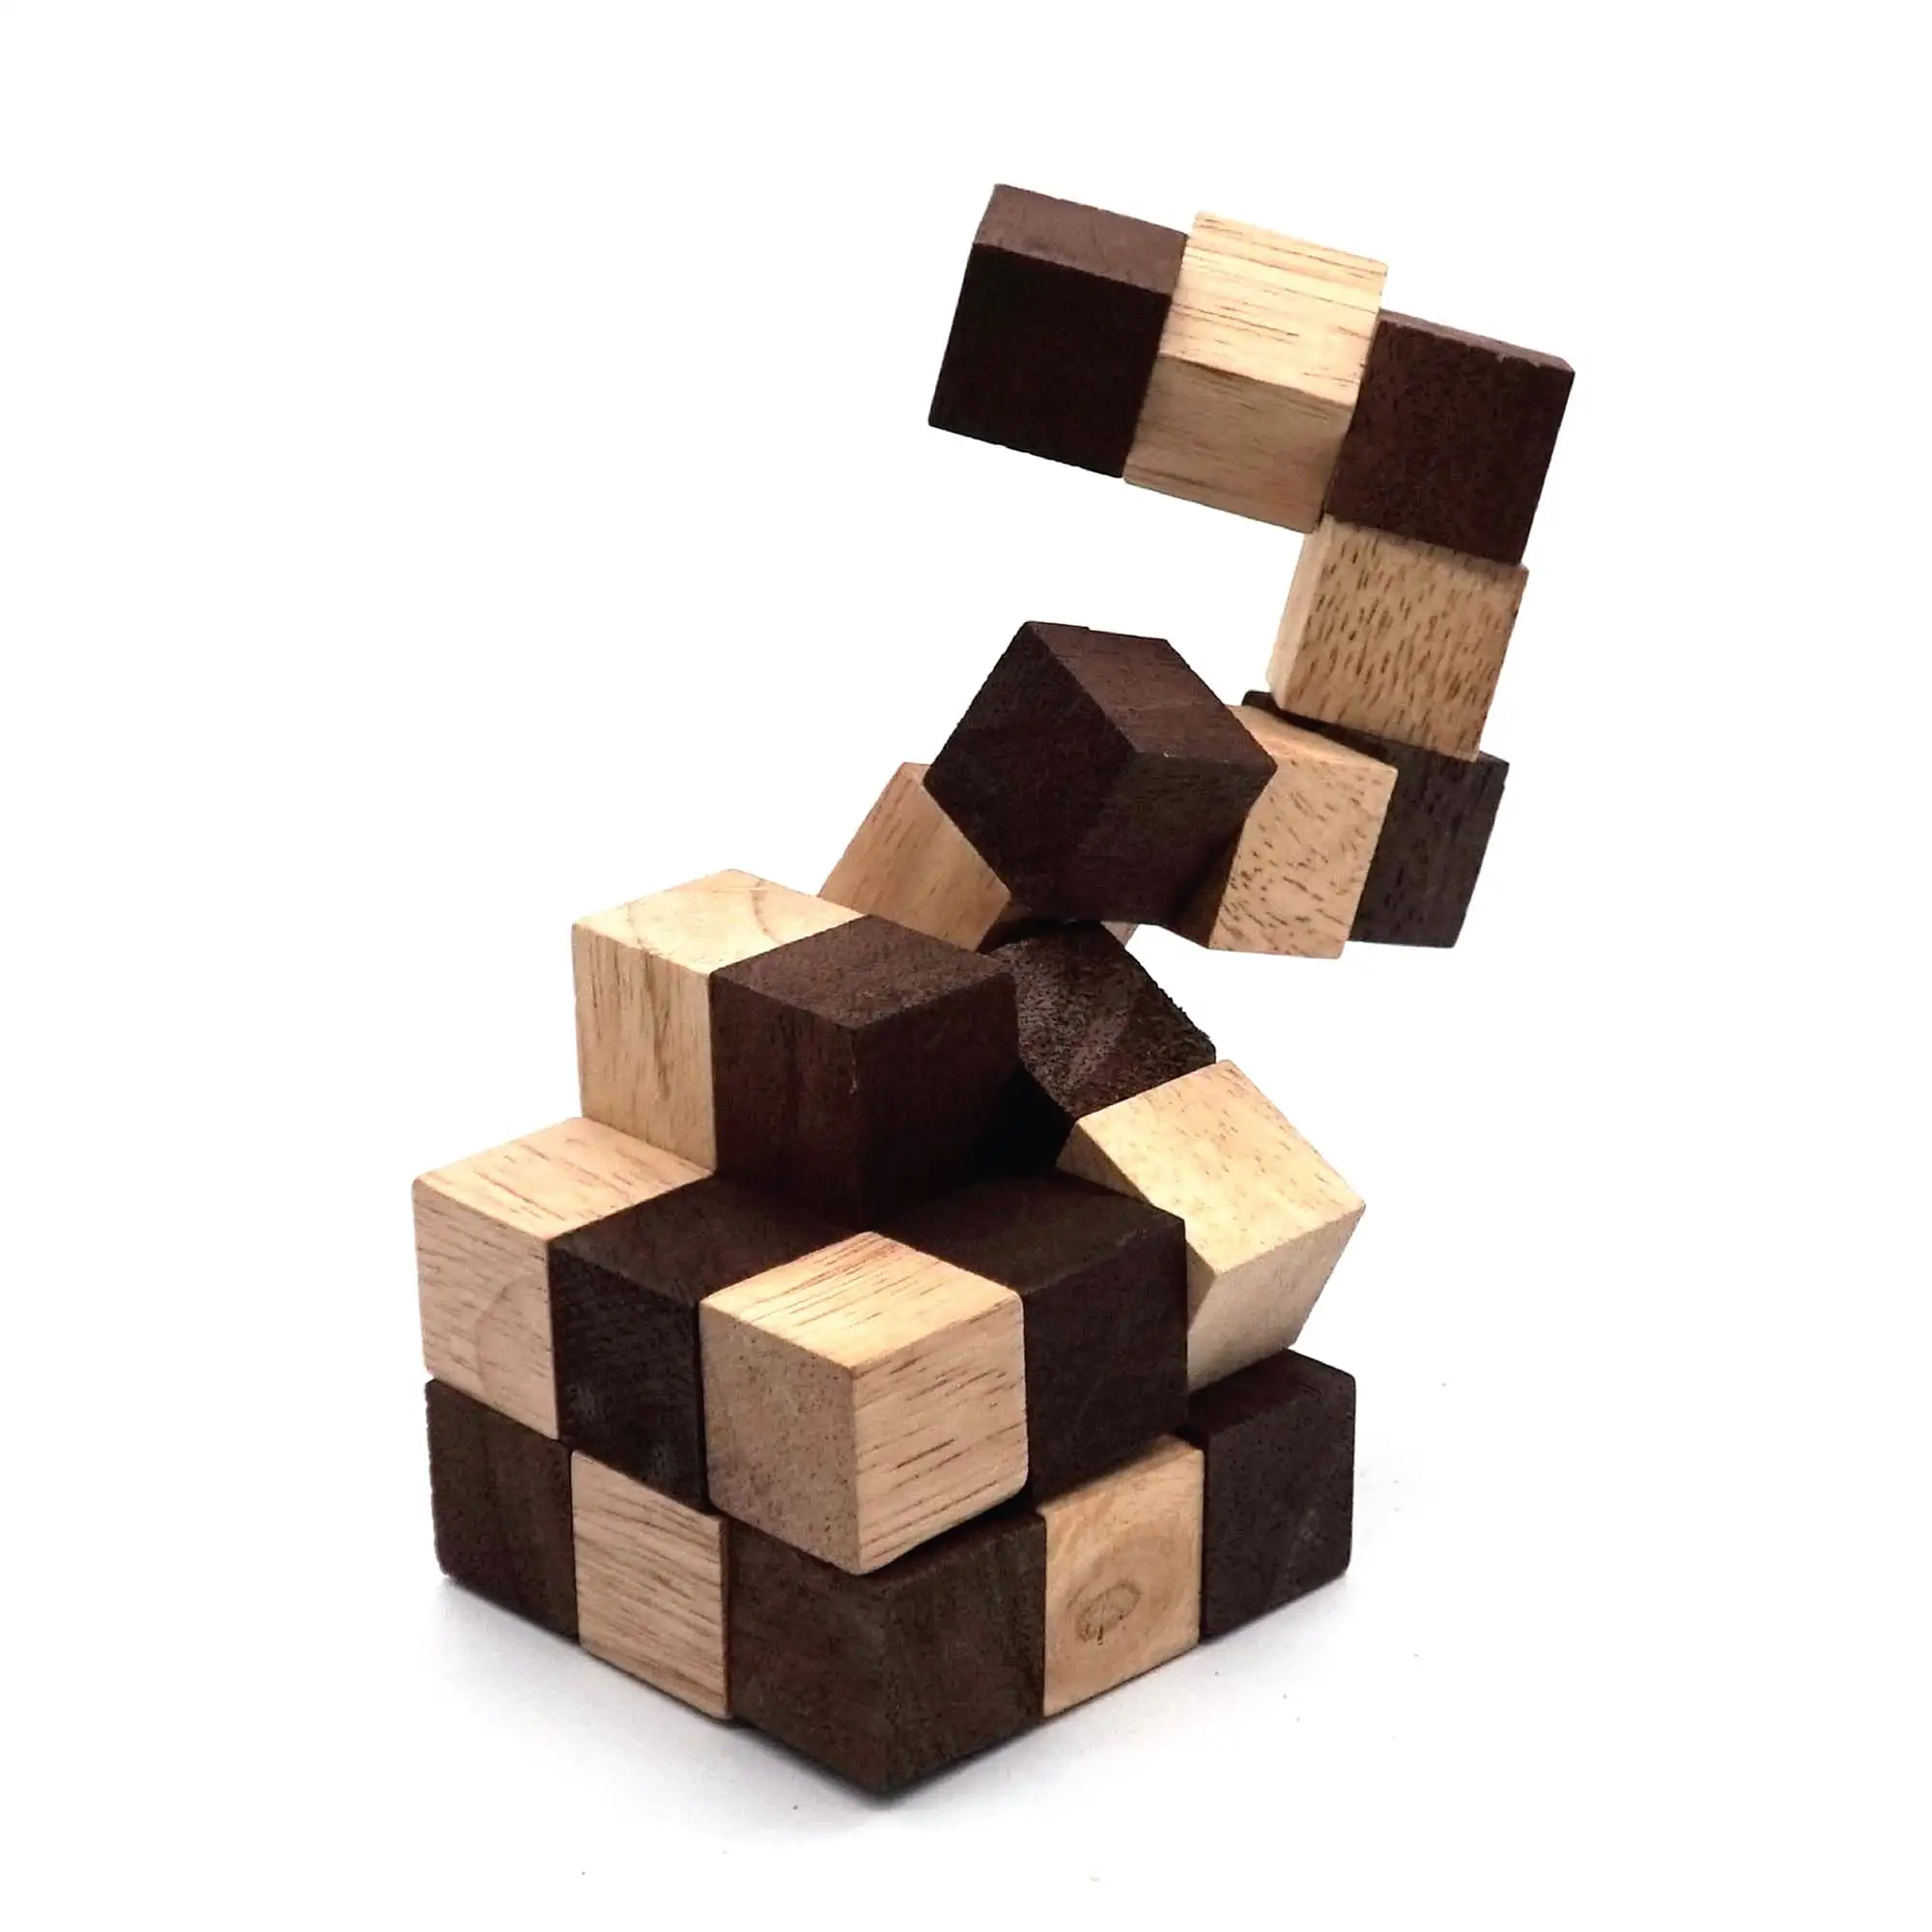 Змеиный куб-головоломка классические игры, 3D головоломки разума для взрослых в руке с деревянными кубиками для образовательных задач мозга